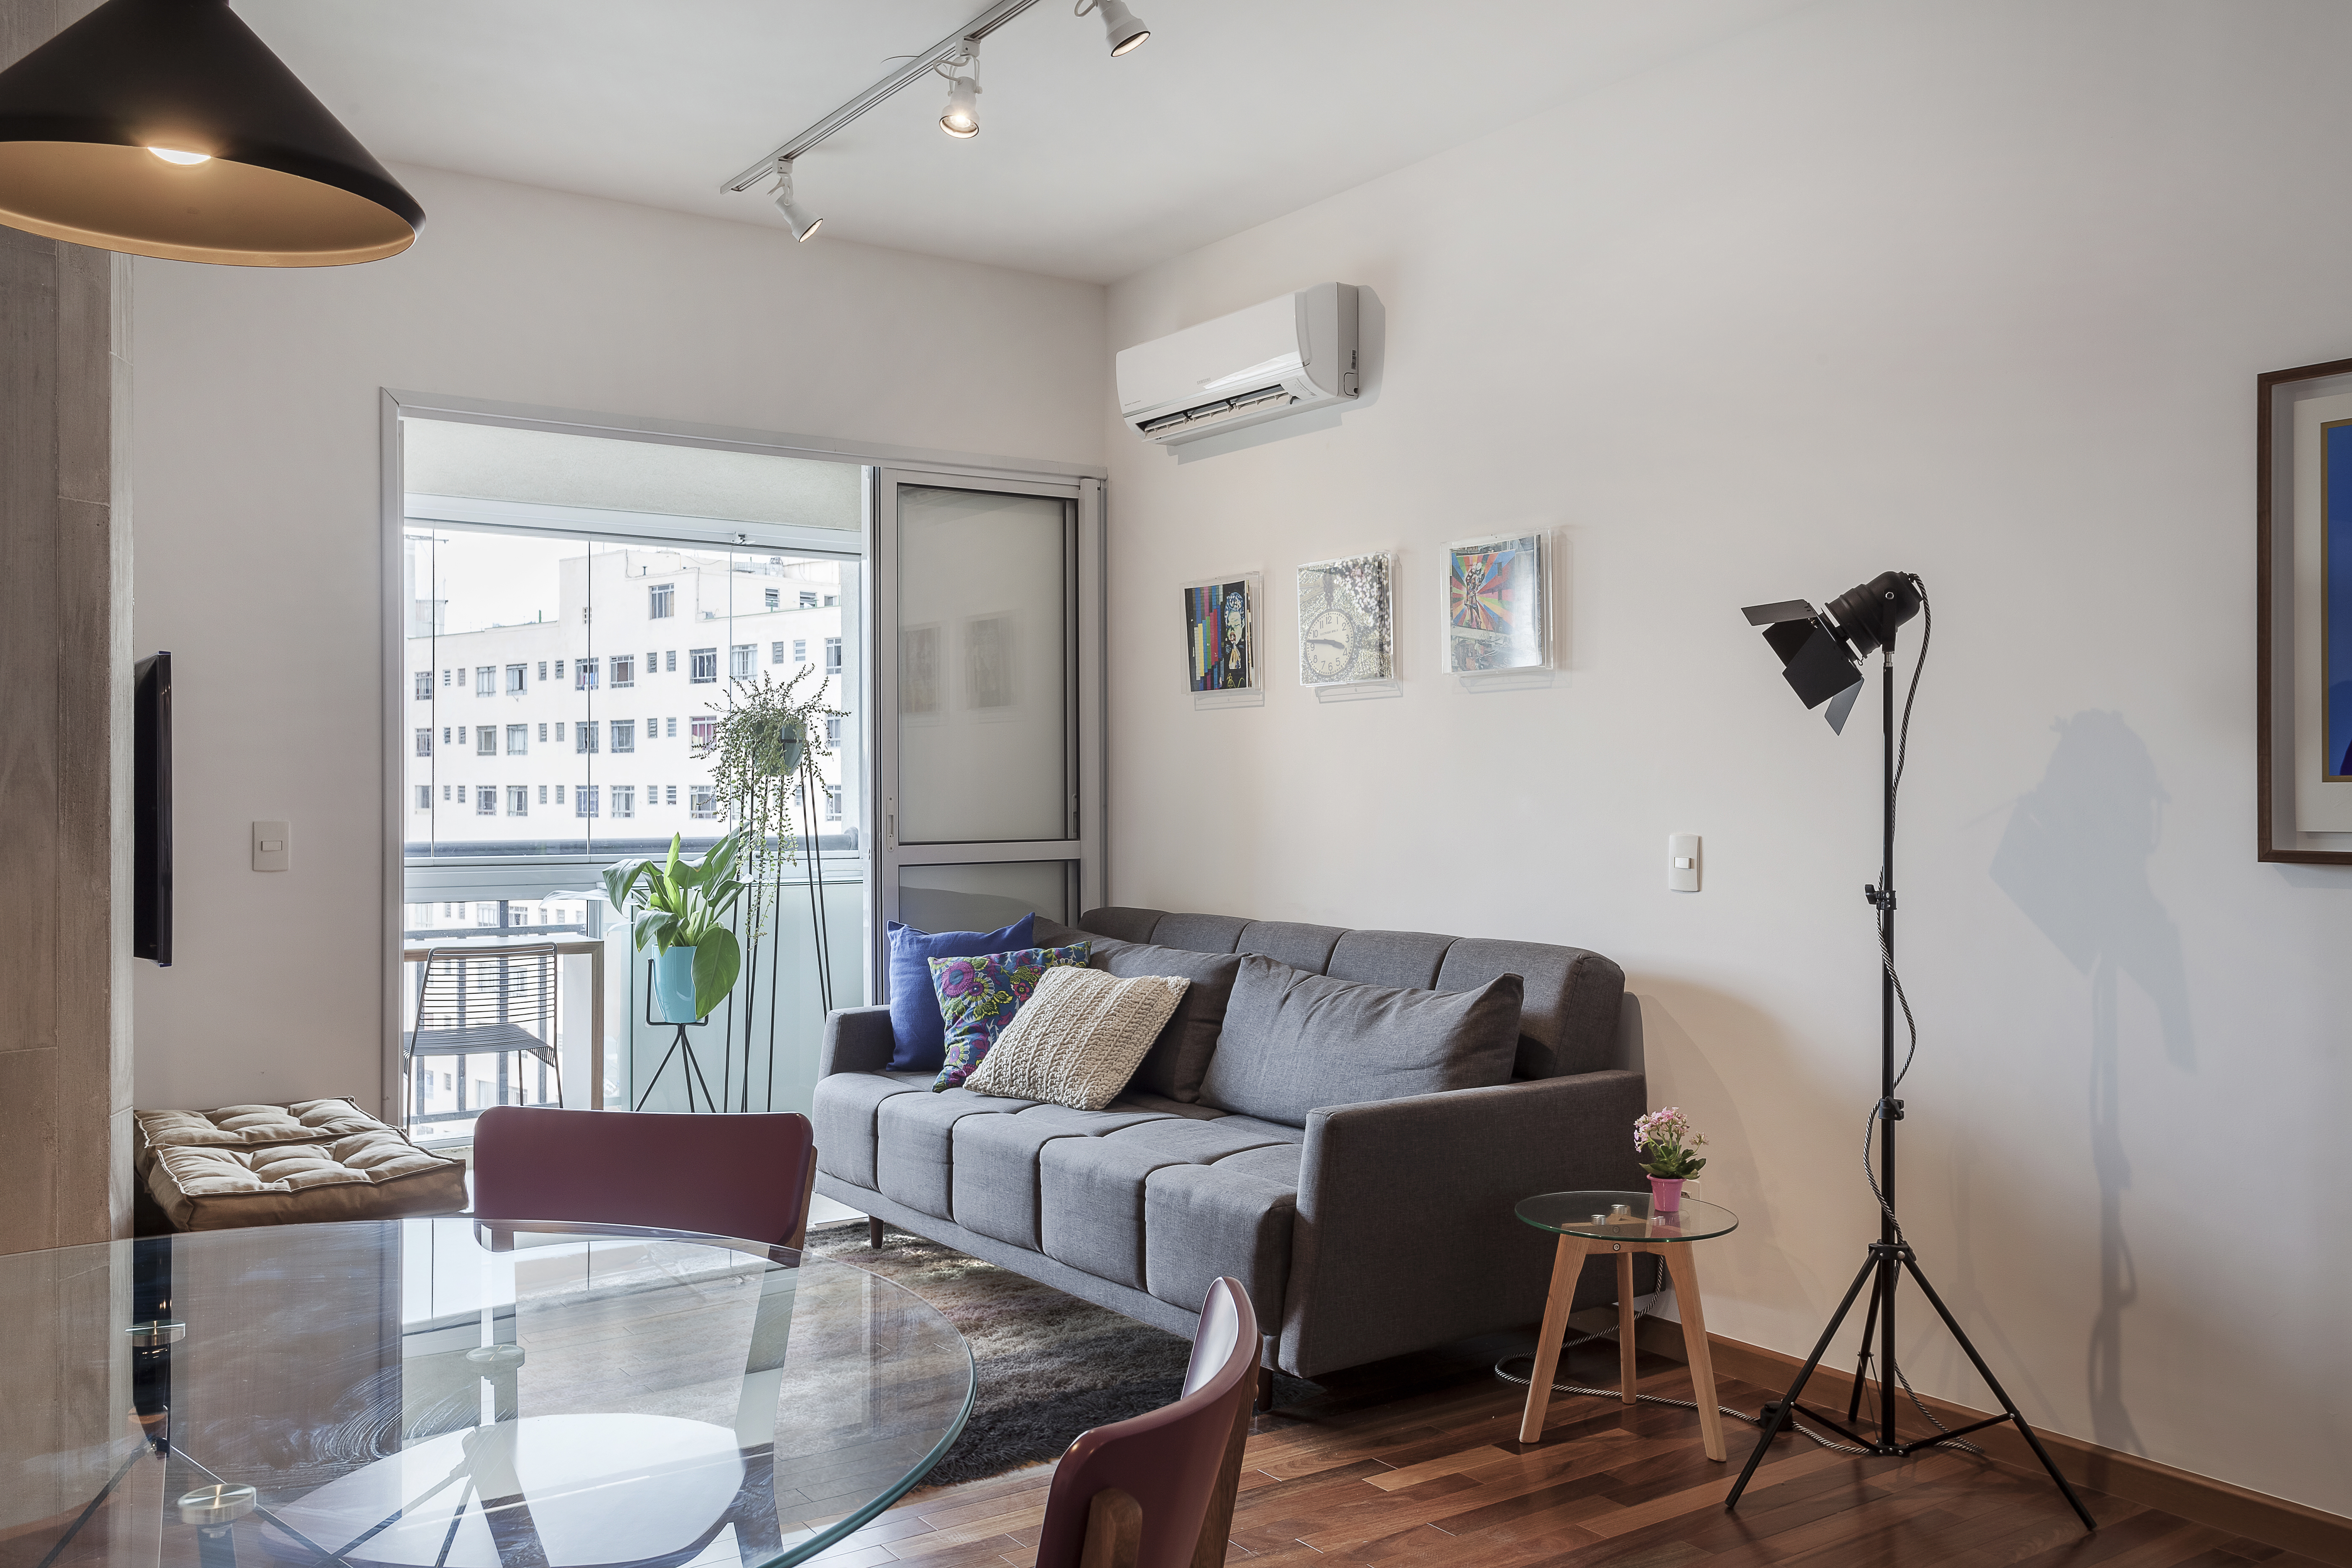 Apartamento com décor neutro planejado para três jovens estudantes